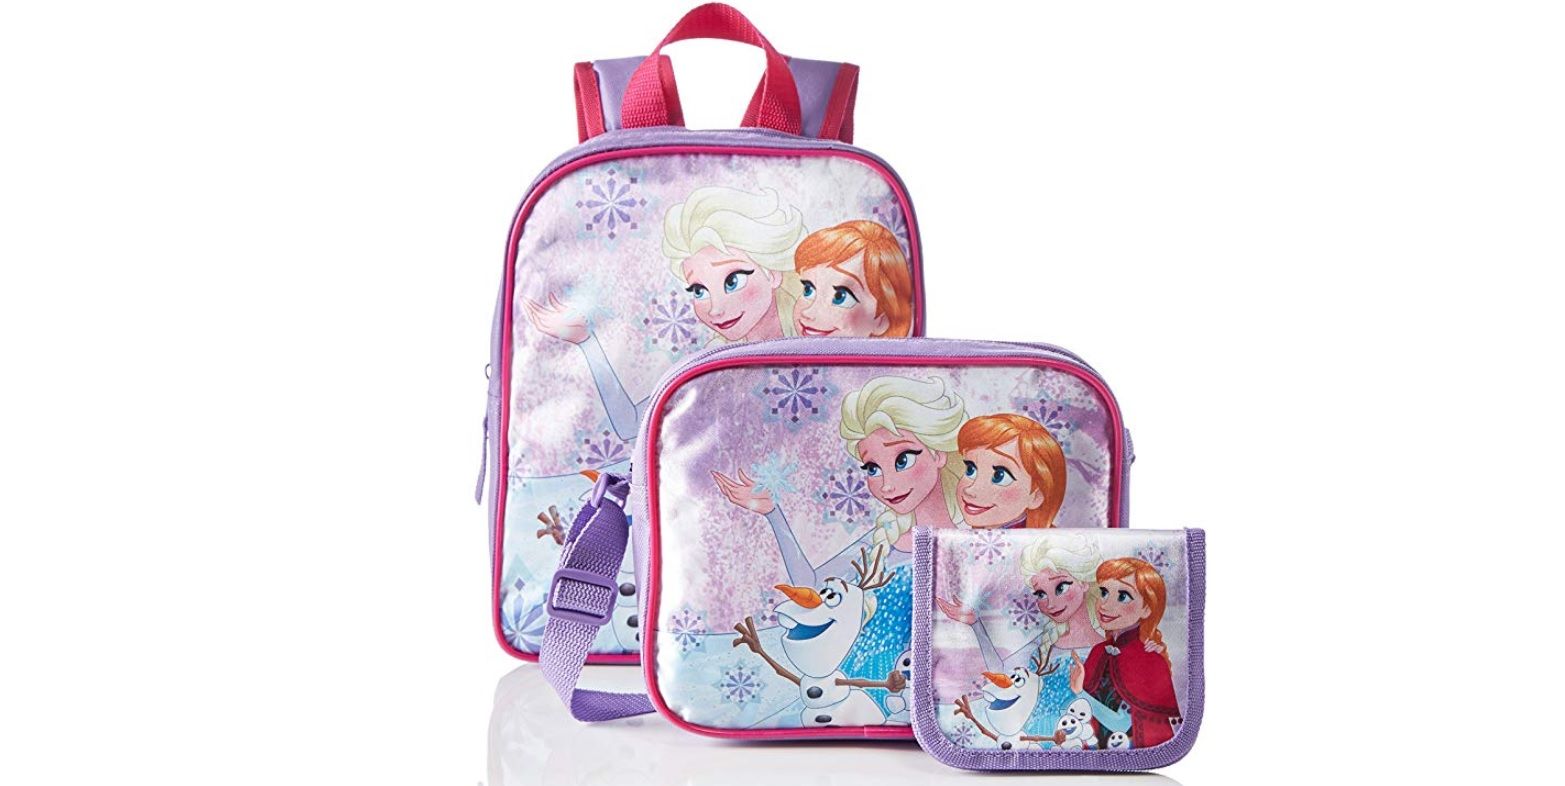 ¡Chollazo! Pack de mochila de 3 piezas de Frozen por sólo 6,02€ ¡Ahorro de más de 13€!